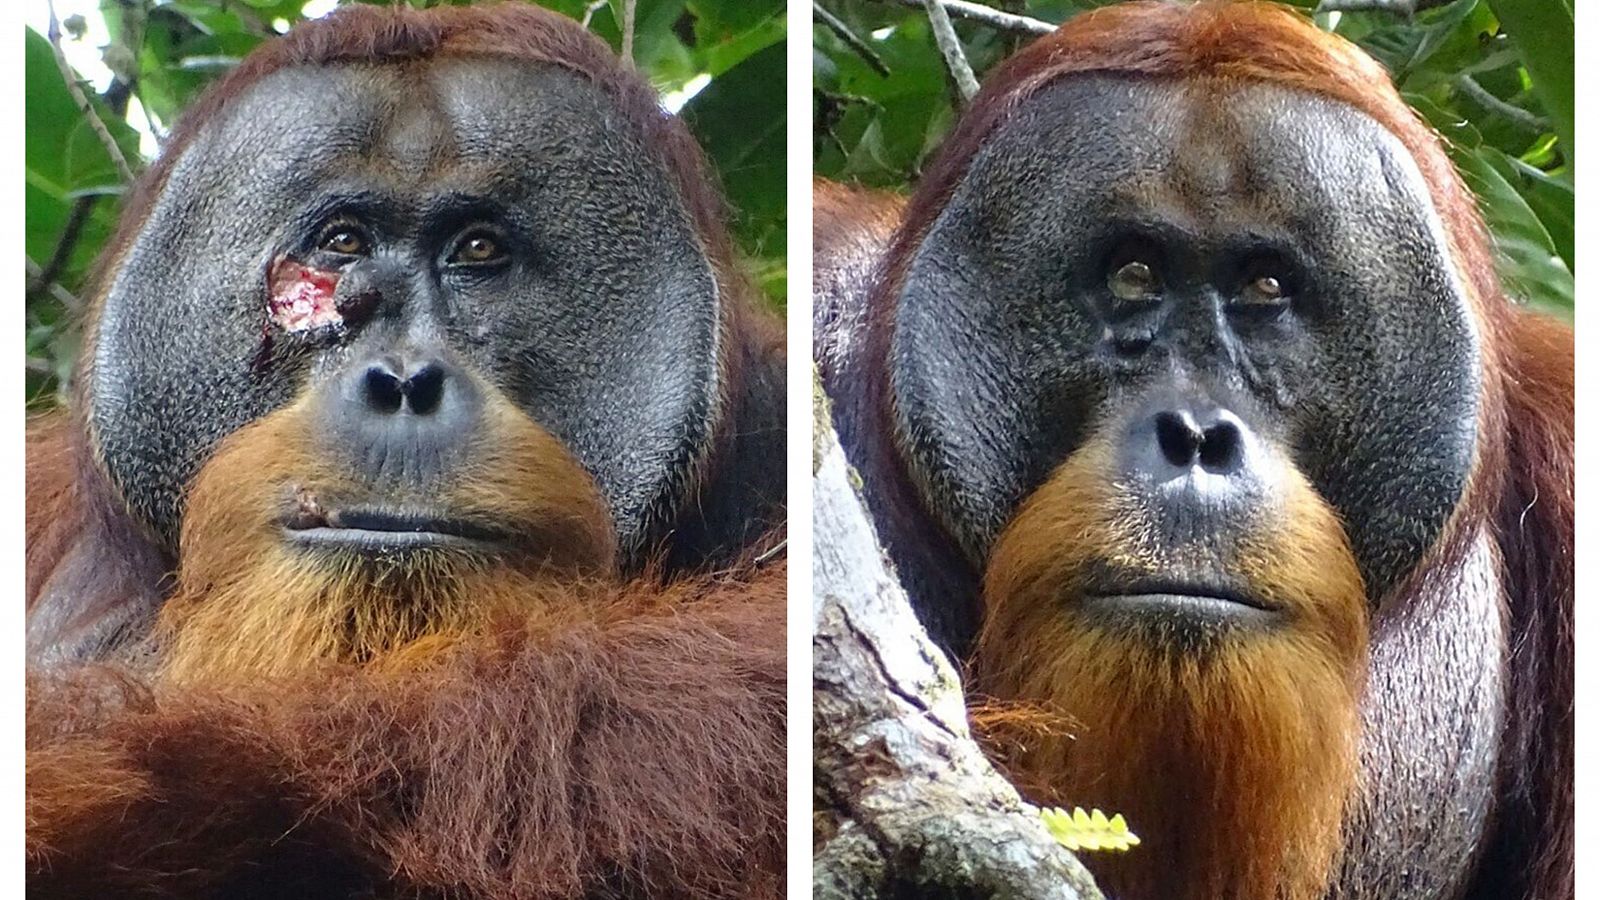 Orangután en Indonesia Utiliza Medicina Tradicional para Curar sus Heridas